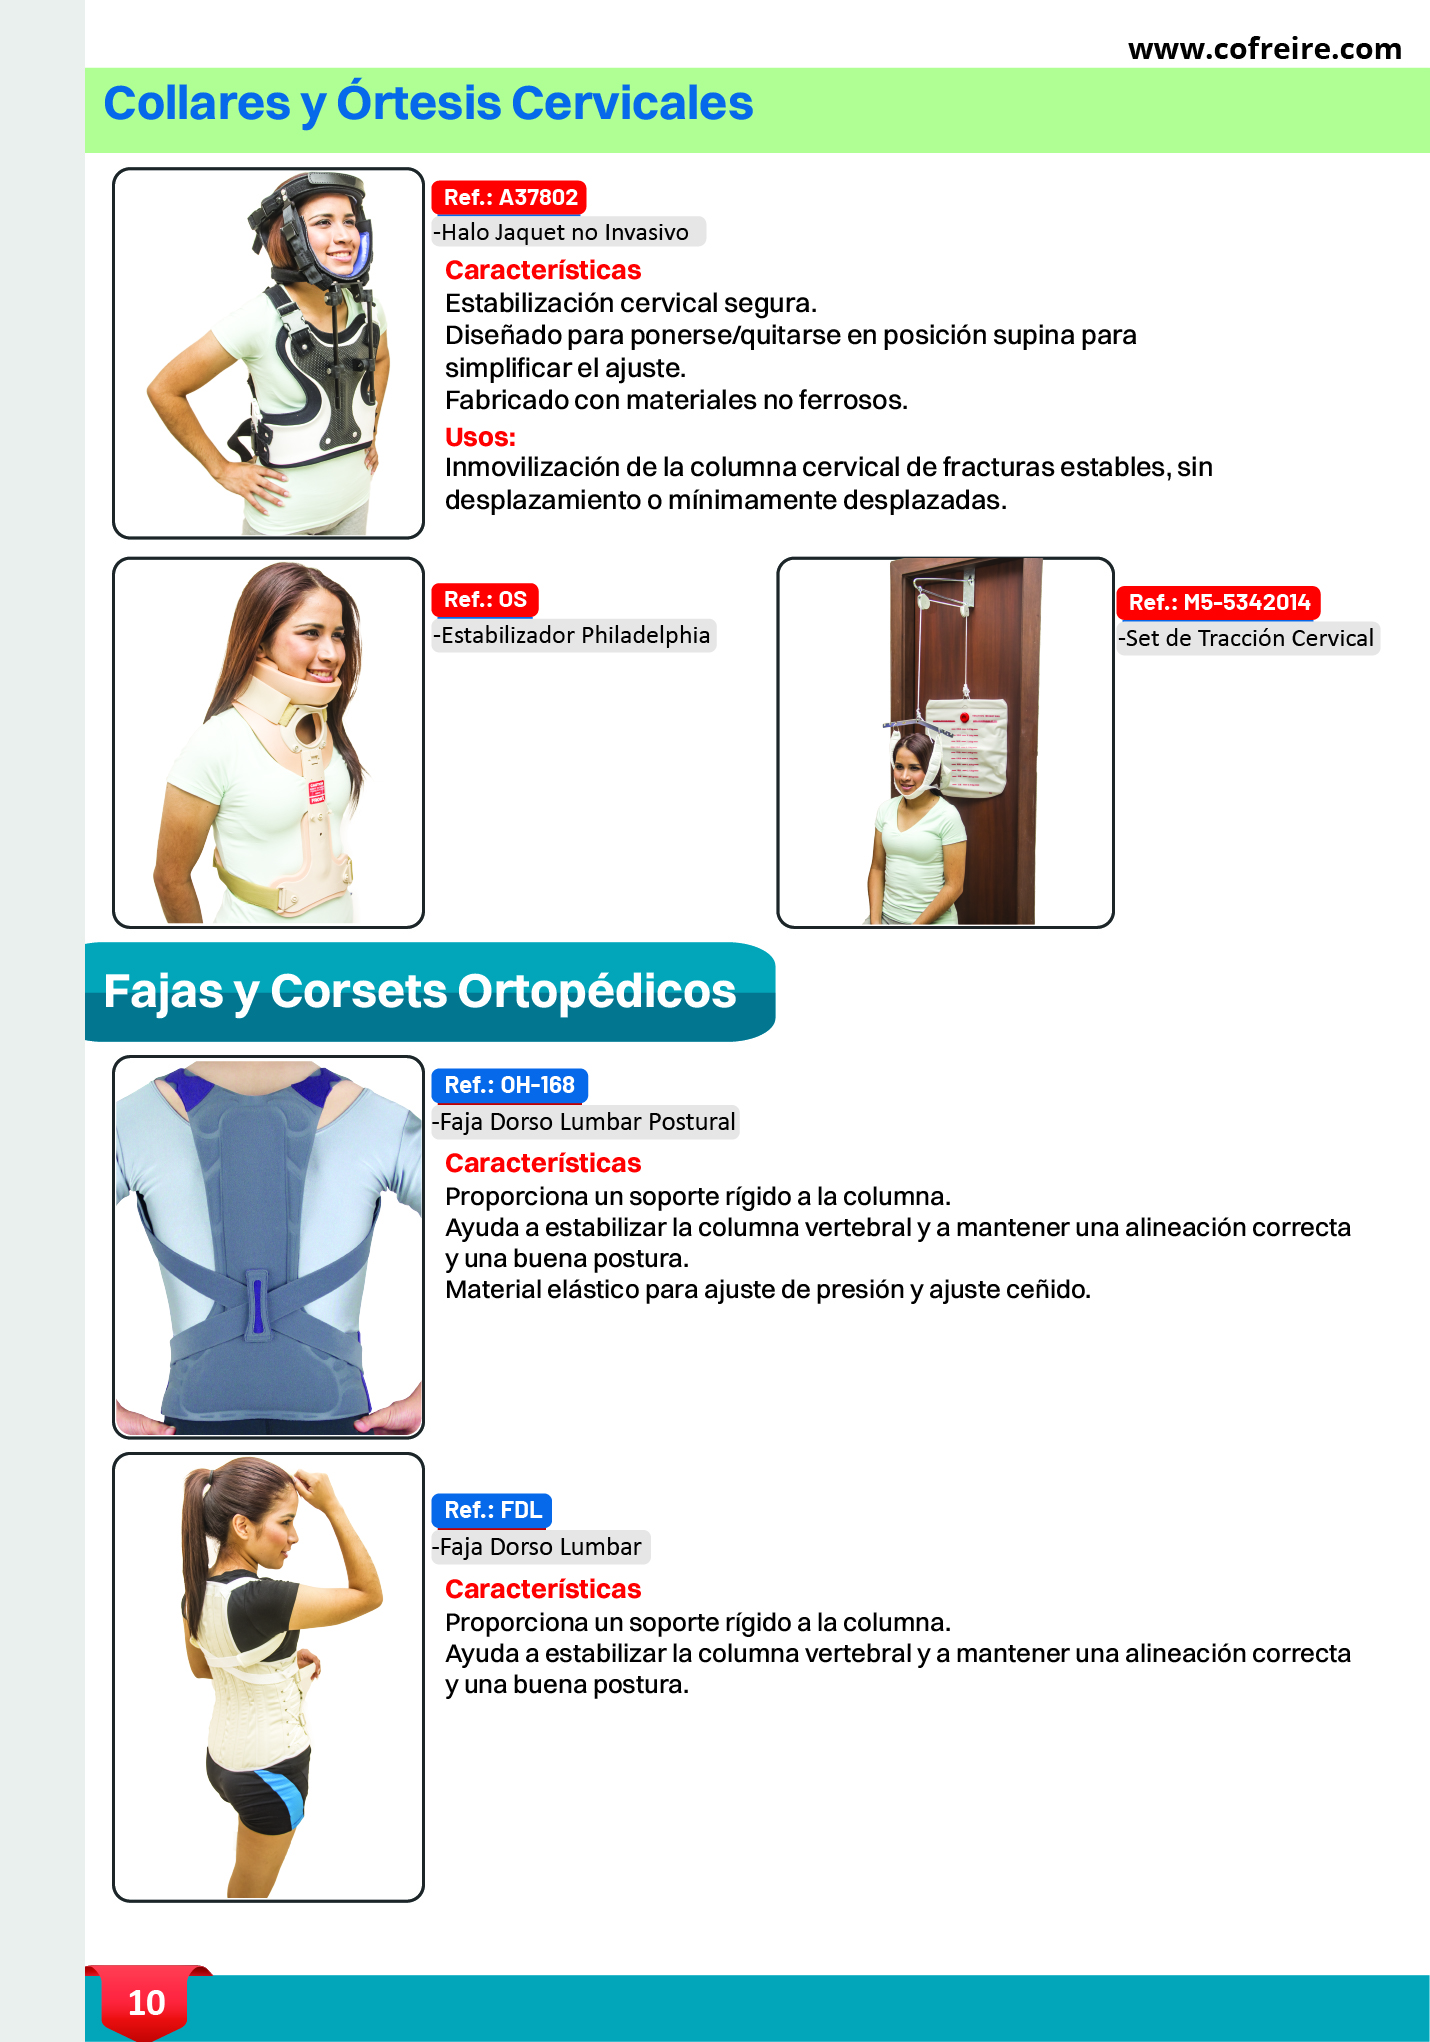 ⏺FAJAS IMPORTADAS Y NACIONALES - Centro Ortopedico Freire